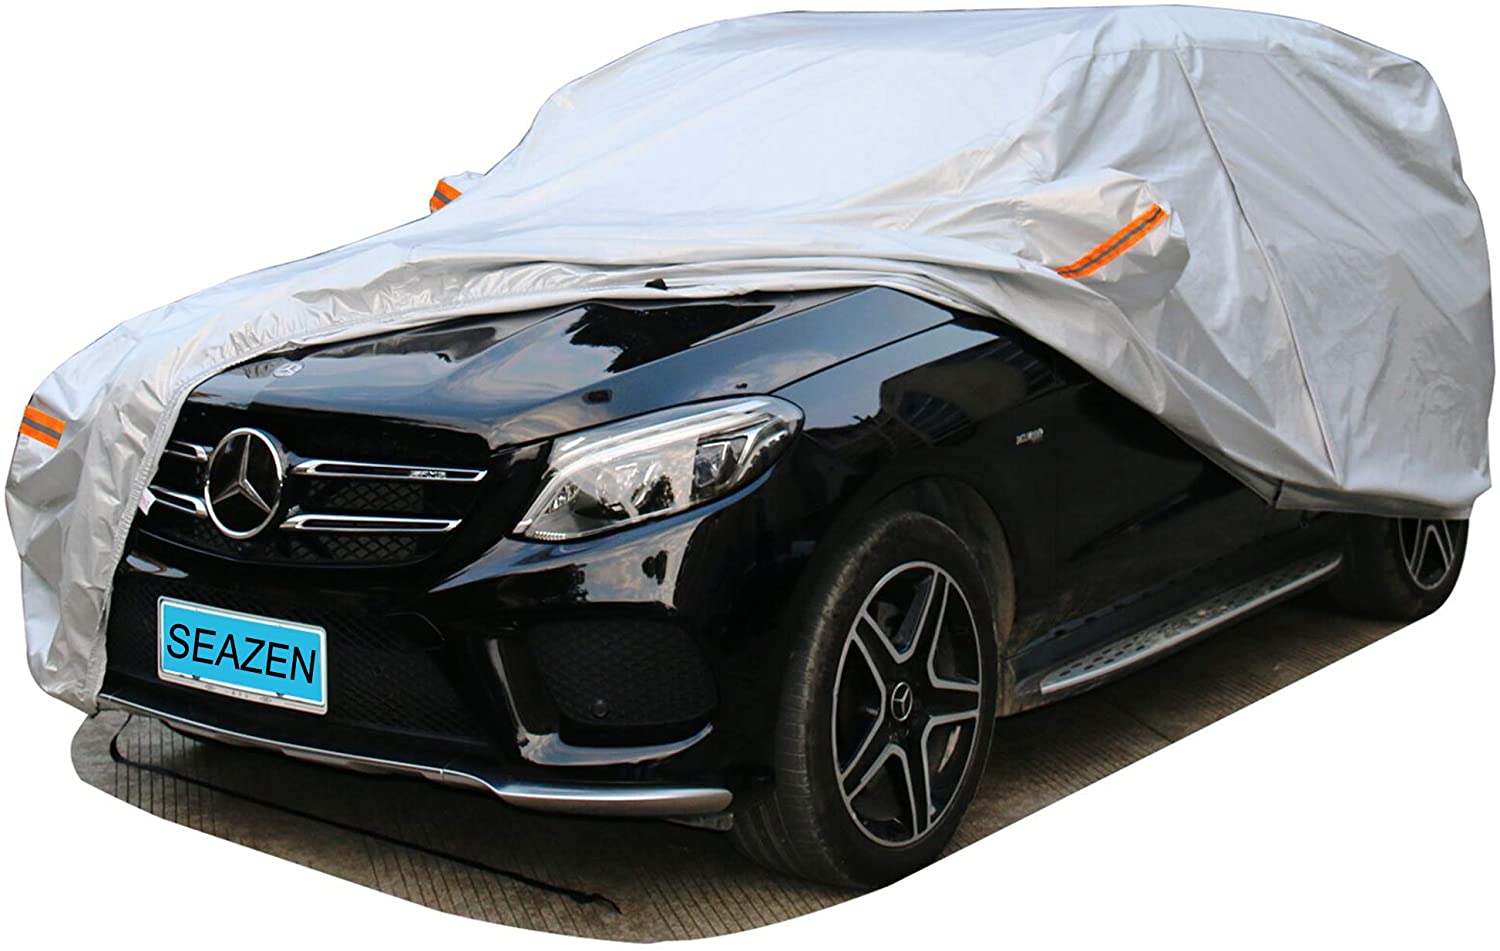 SEAZEN SUV Car Cover Waterproof